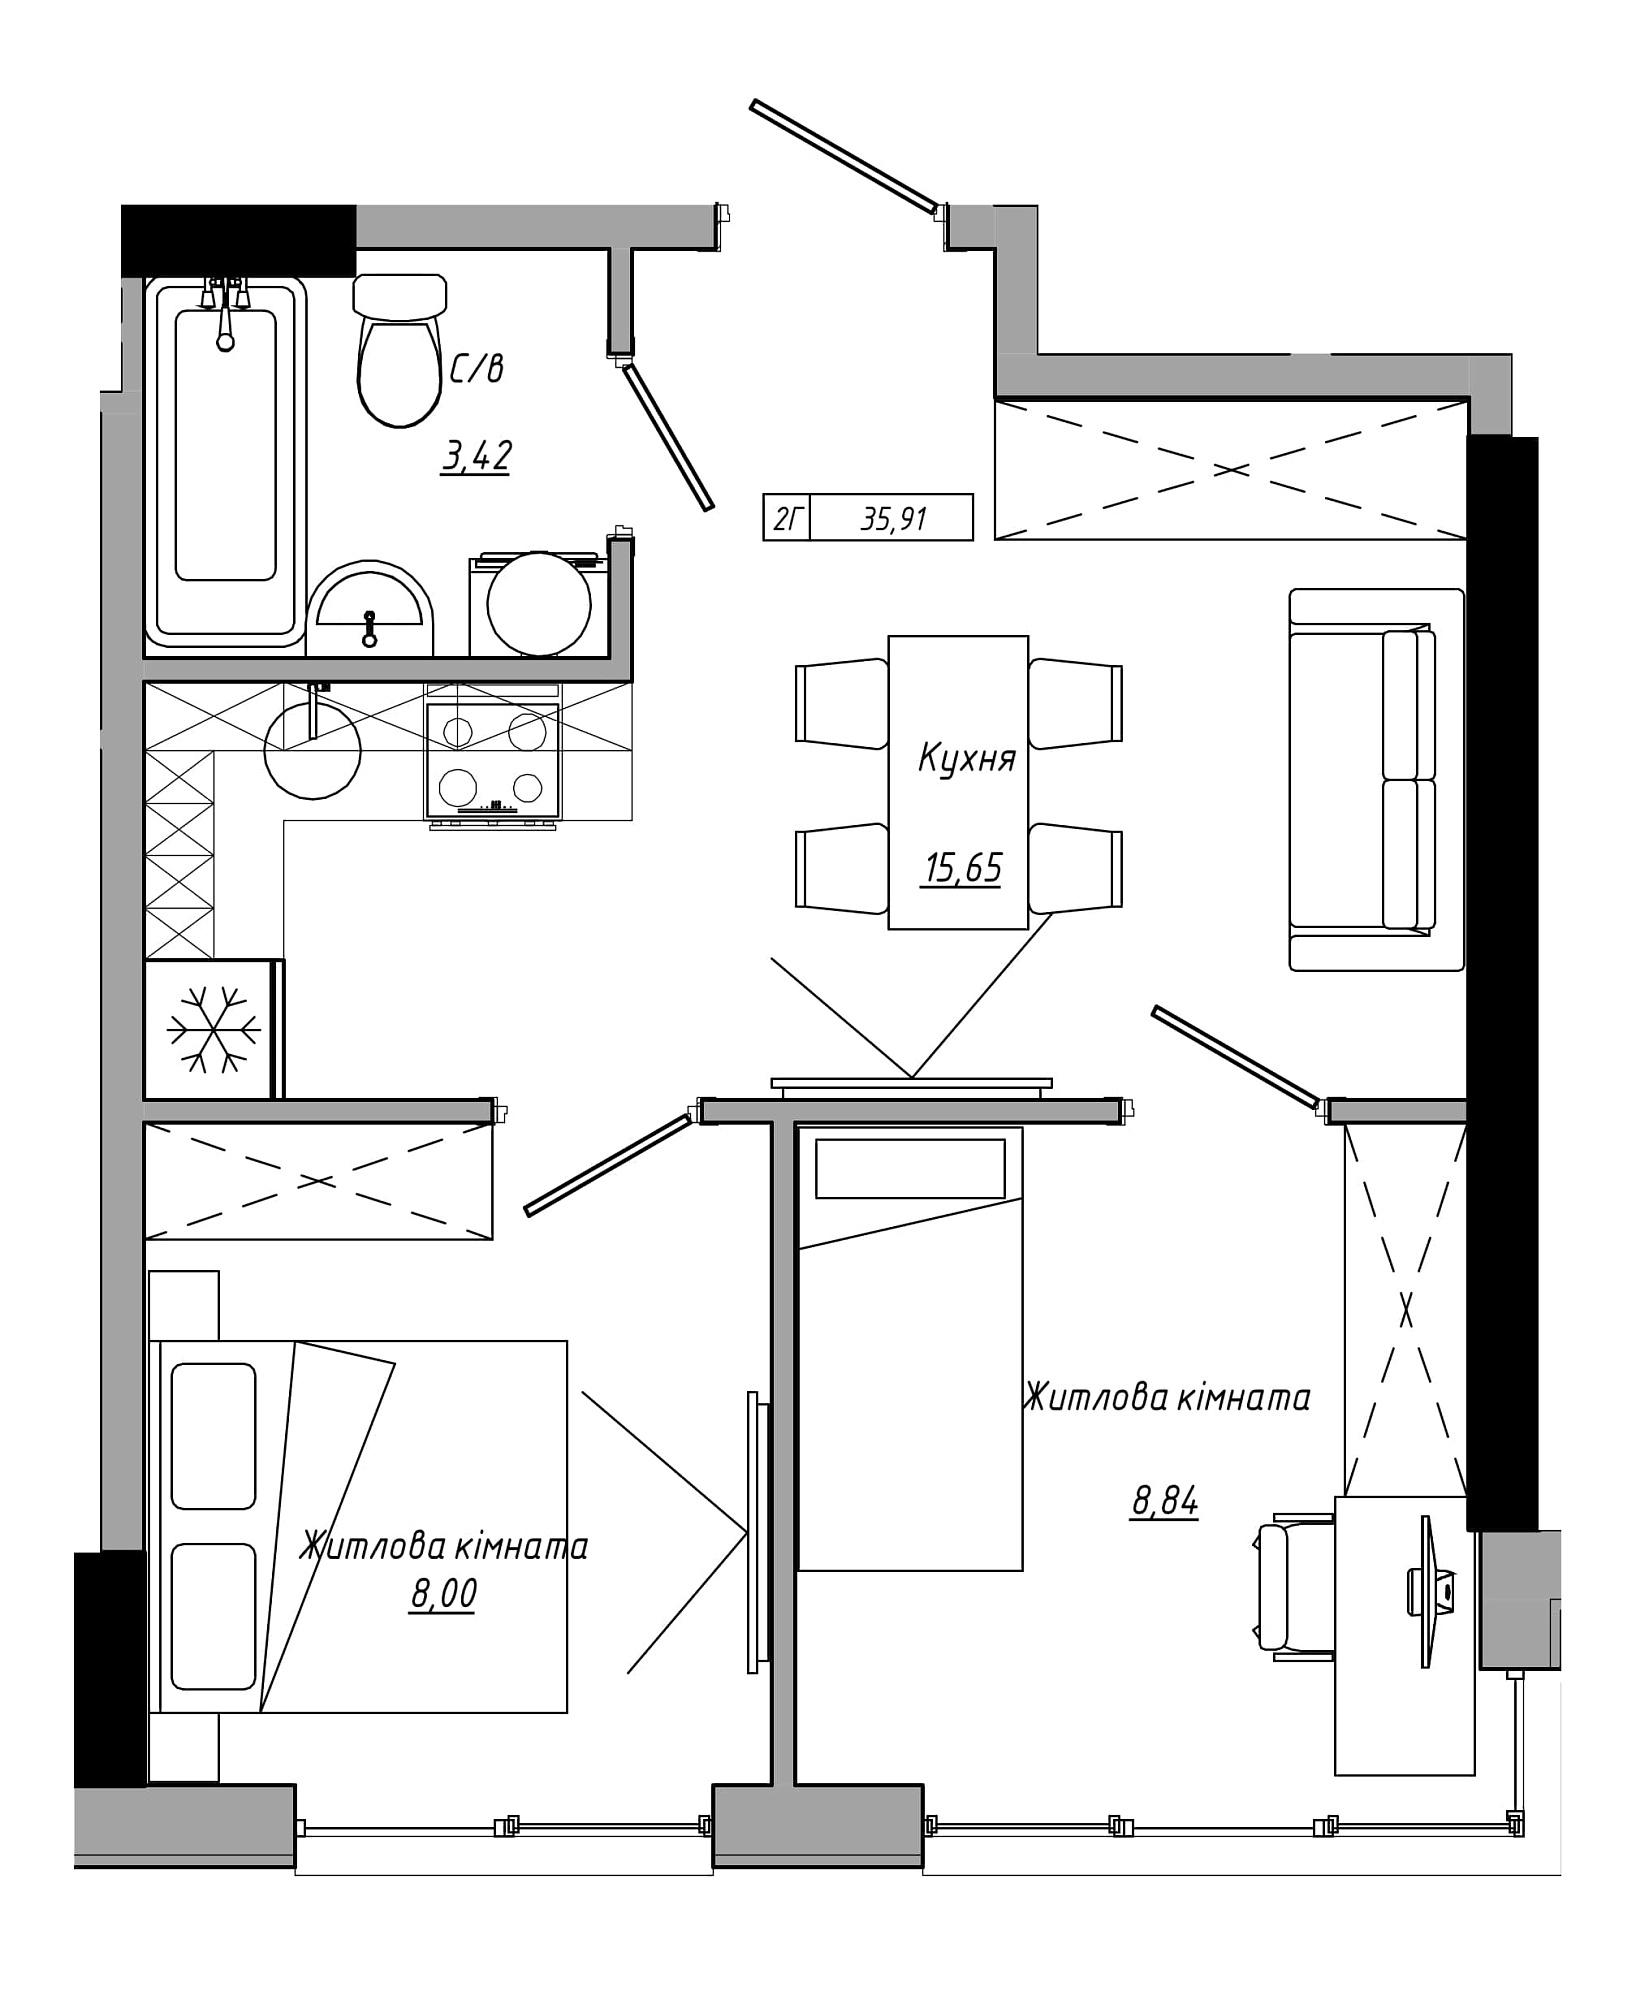 Планування 2-к квартира площею 35.91м2, AB-21-11/00019.